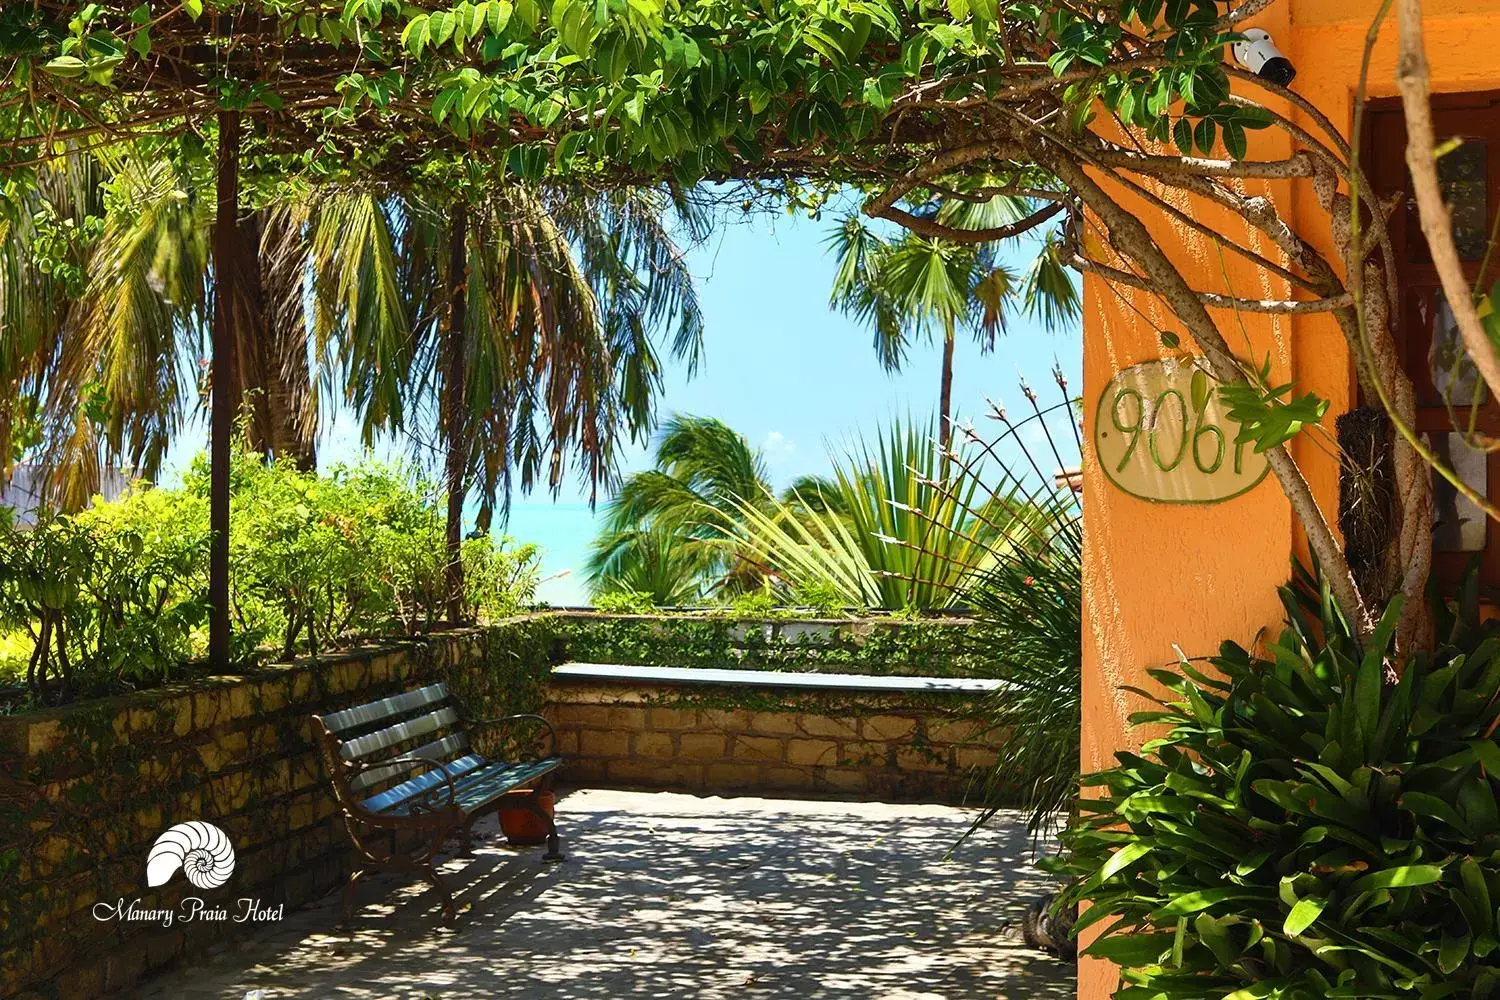 Garden in Manary Praia Hotel